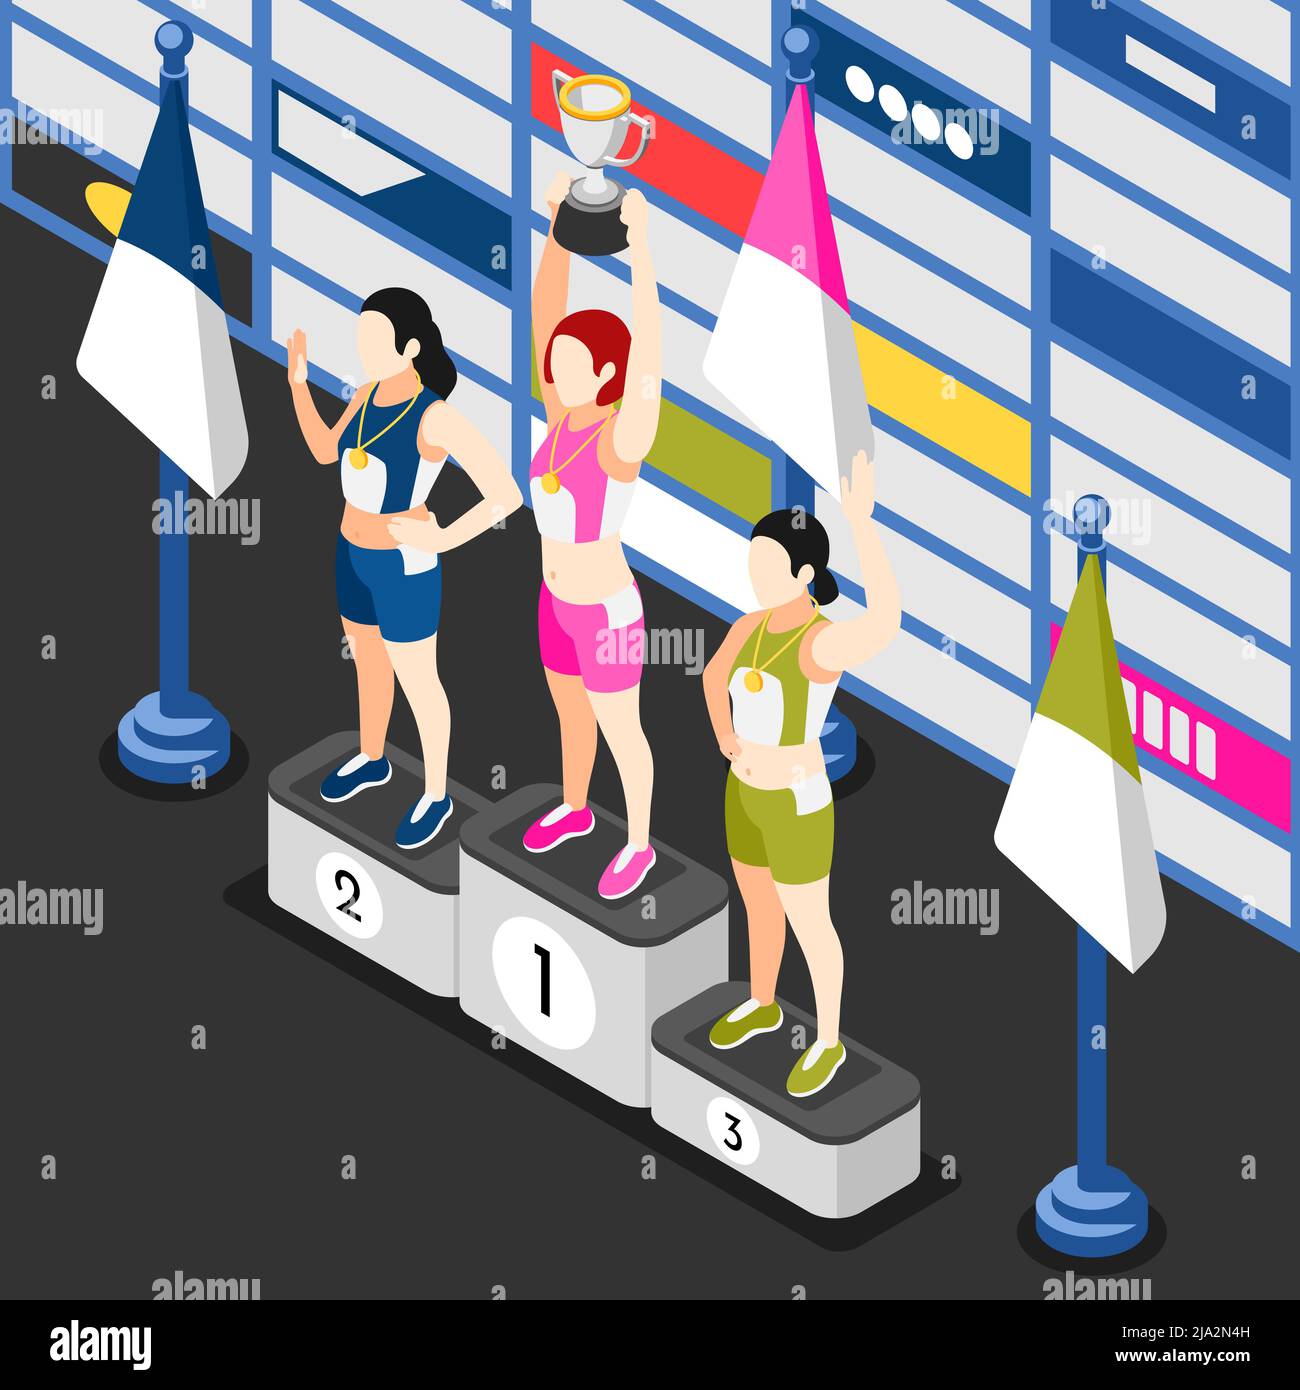 Journée internationale du sport fond isométrique avec vue des gagnants podium avec des athlètes féminins tenant des prix de coupe illustration vectorielle Illustration de Vecteur